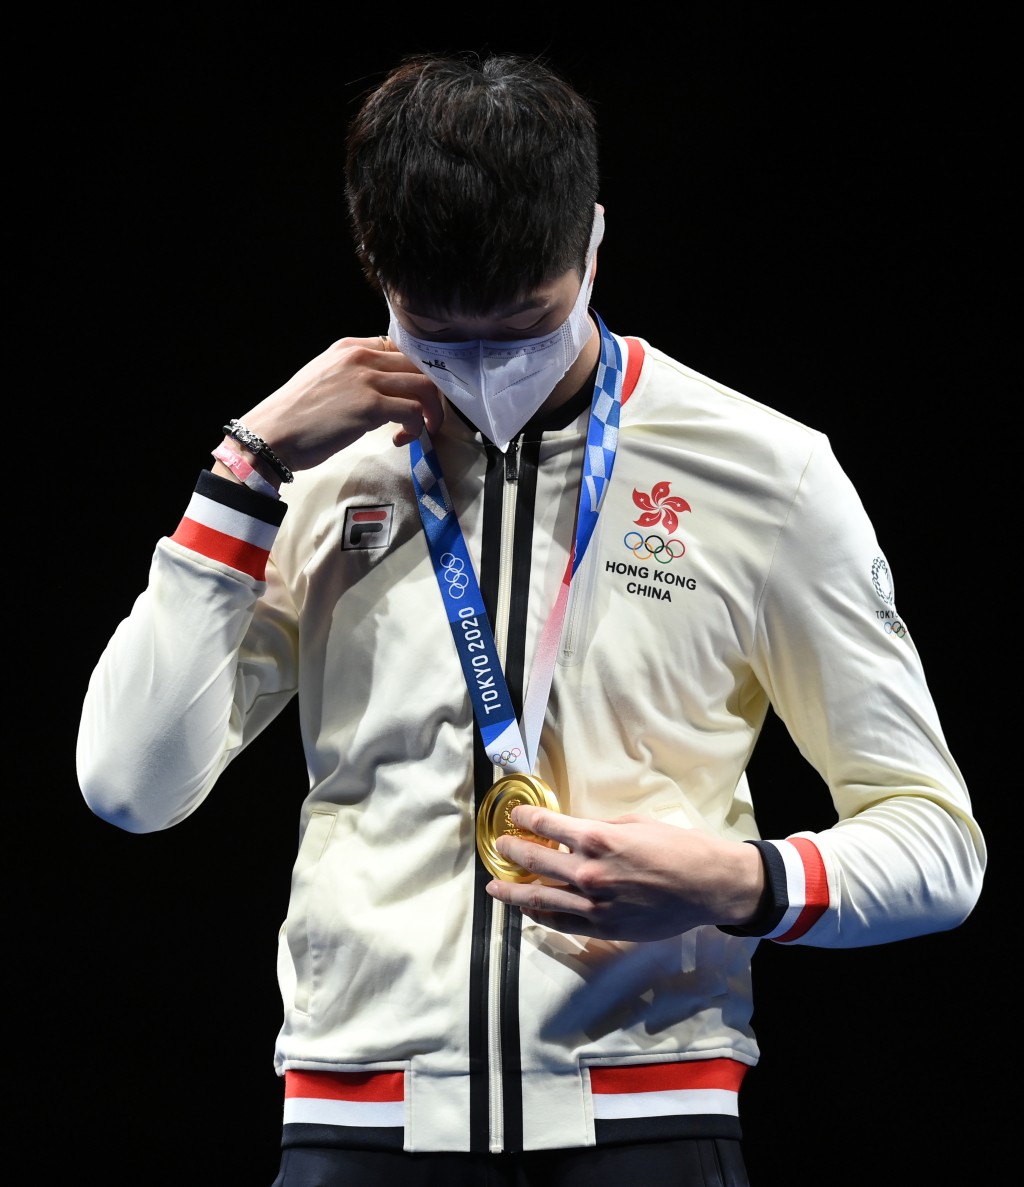 張家朗在東京奧運會男子花劍個人賽中為香港代表團贏得今屆奧運會首面金牌。新華社圖片